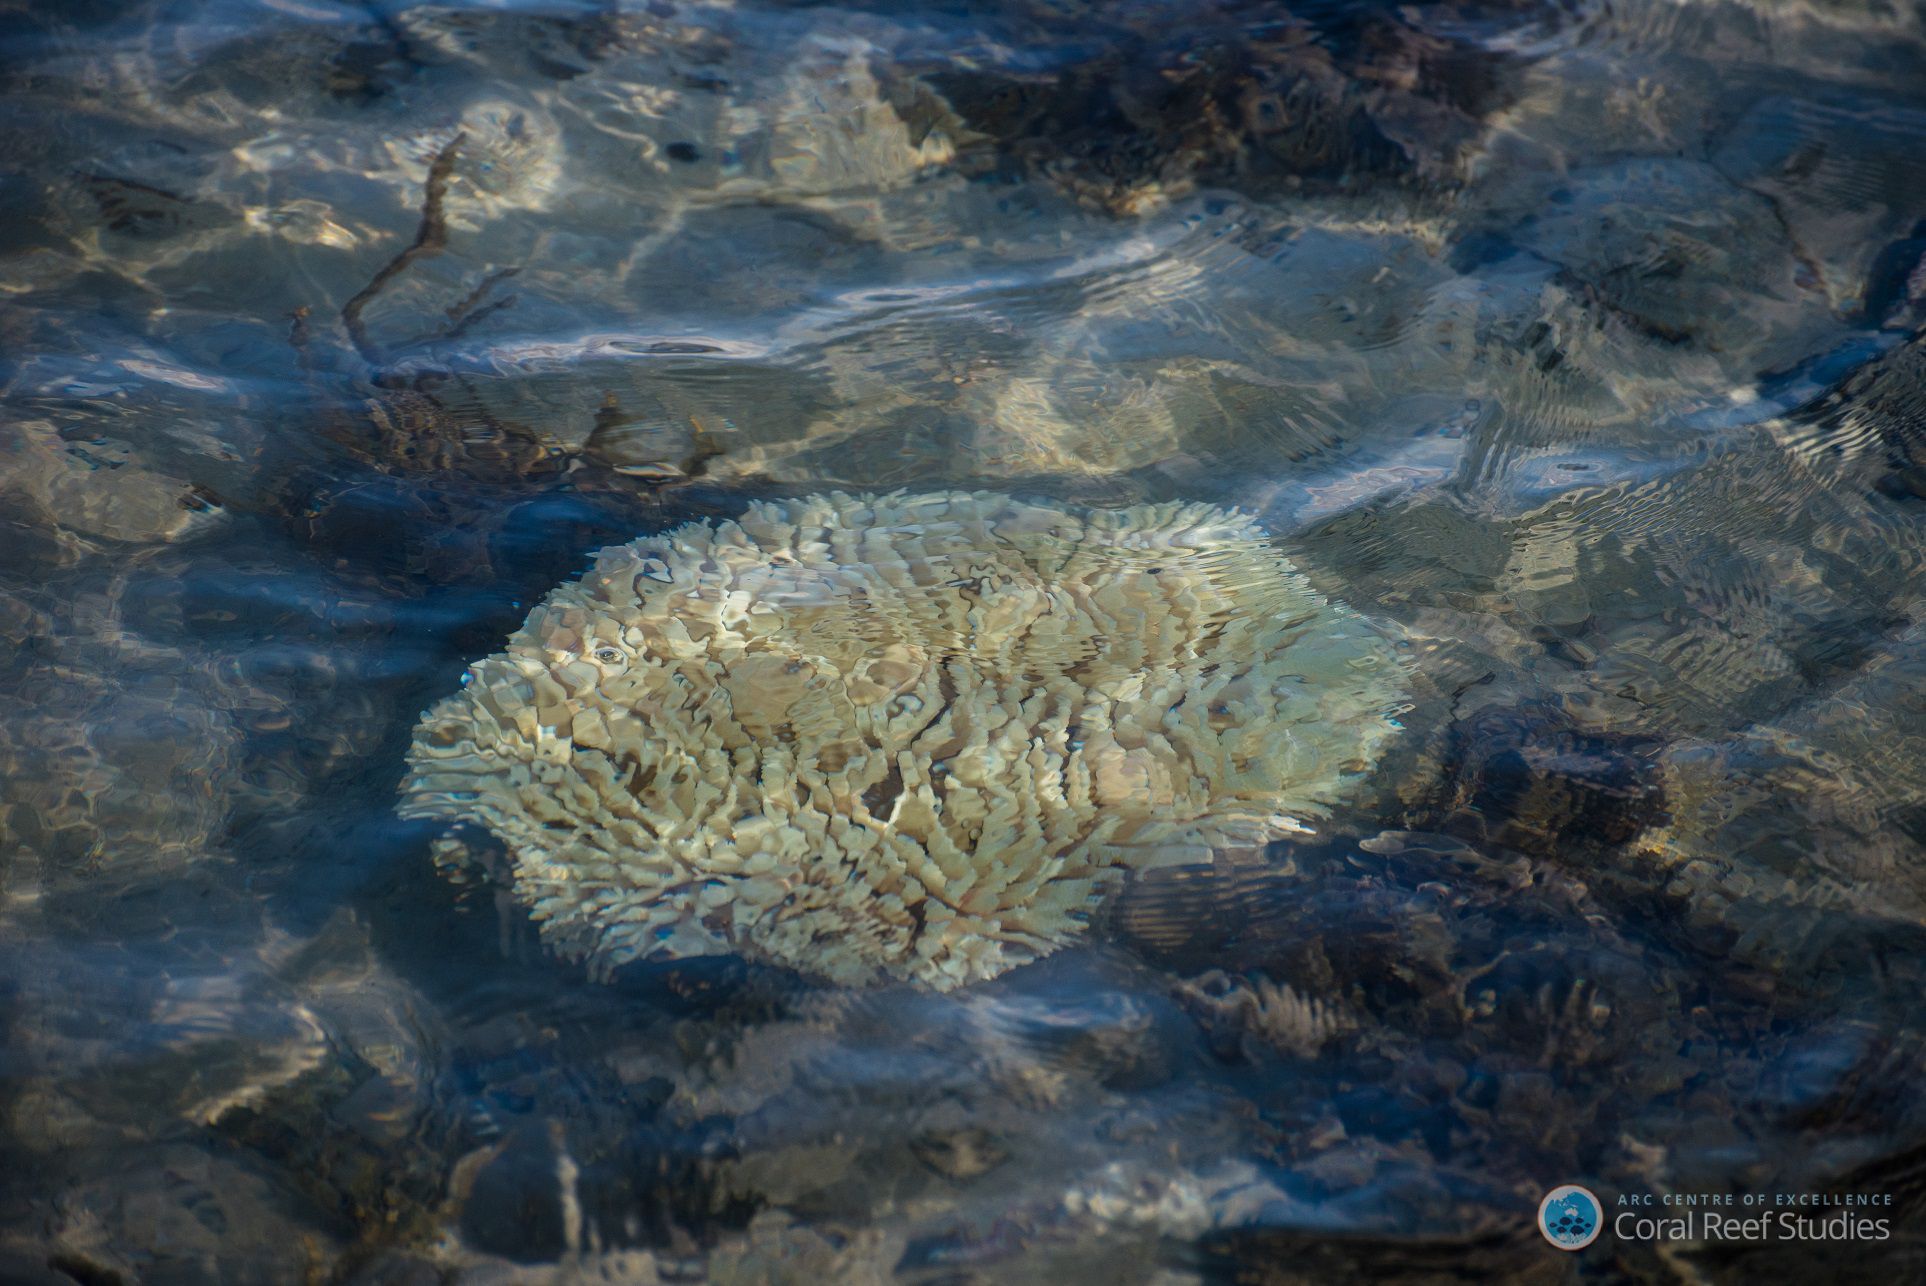 L'expédition Tara Pacific va parcourir 100.000 km et récoltera 40.000 échantillons lors d'une étude à l'échelle de l'océan Pacifique. Le but est de comprendre la biodiversité des récifs mais aussi les résistances et les faiblesses du corail, de plus en plus touché par le « blanchissement », quand le polype expulse son algue symbiotique. © Terry Hughes, ARC Centre of Excellence for Coral Reef Studies